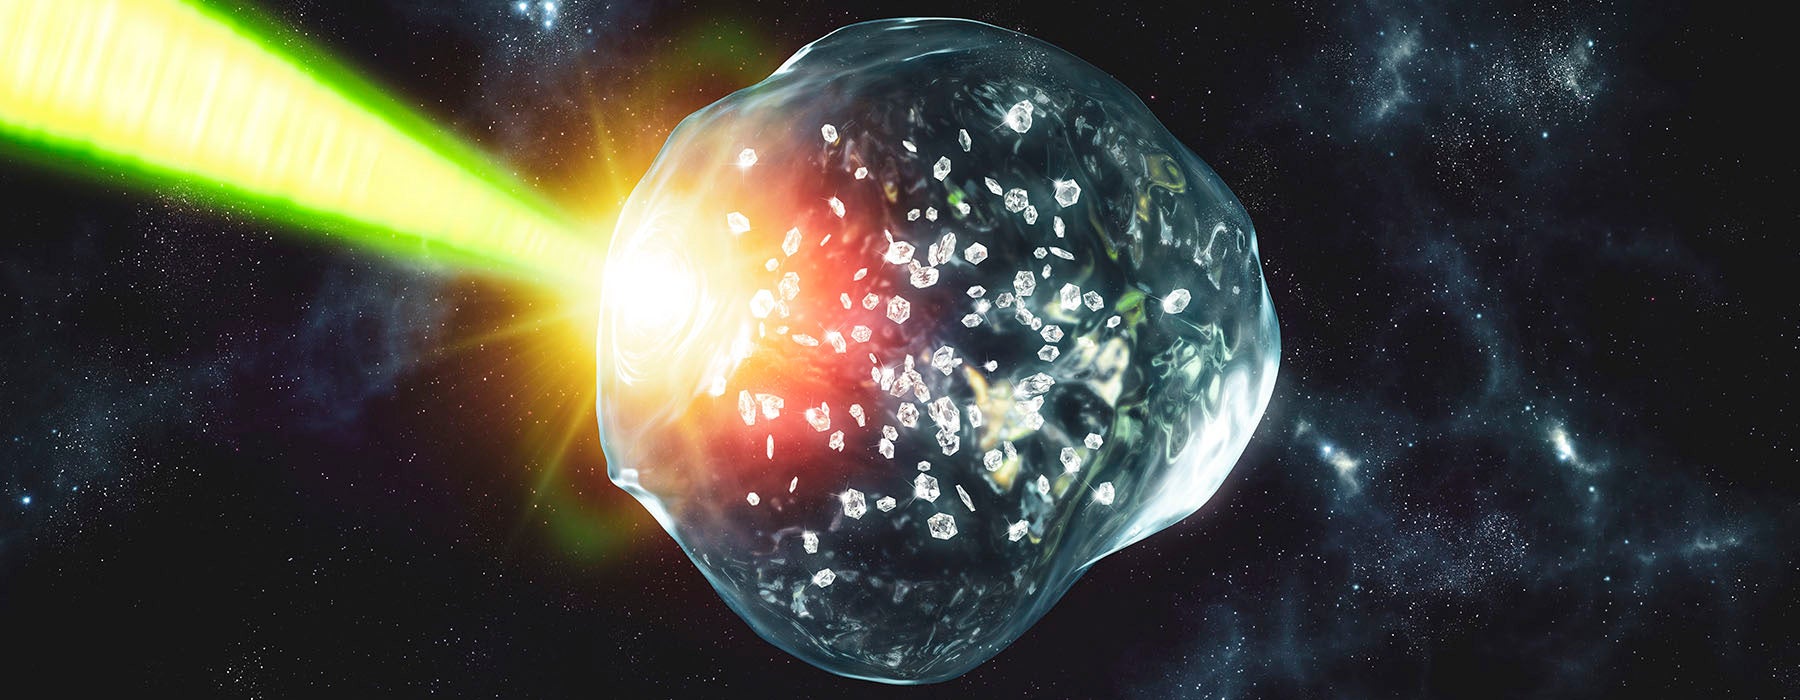 Dentro de planetas gigantes de hielo podría llover diamantes